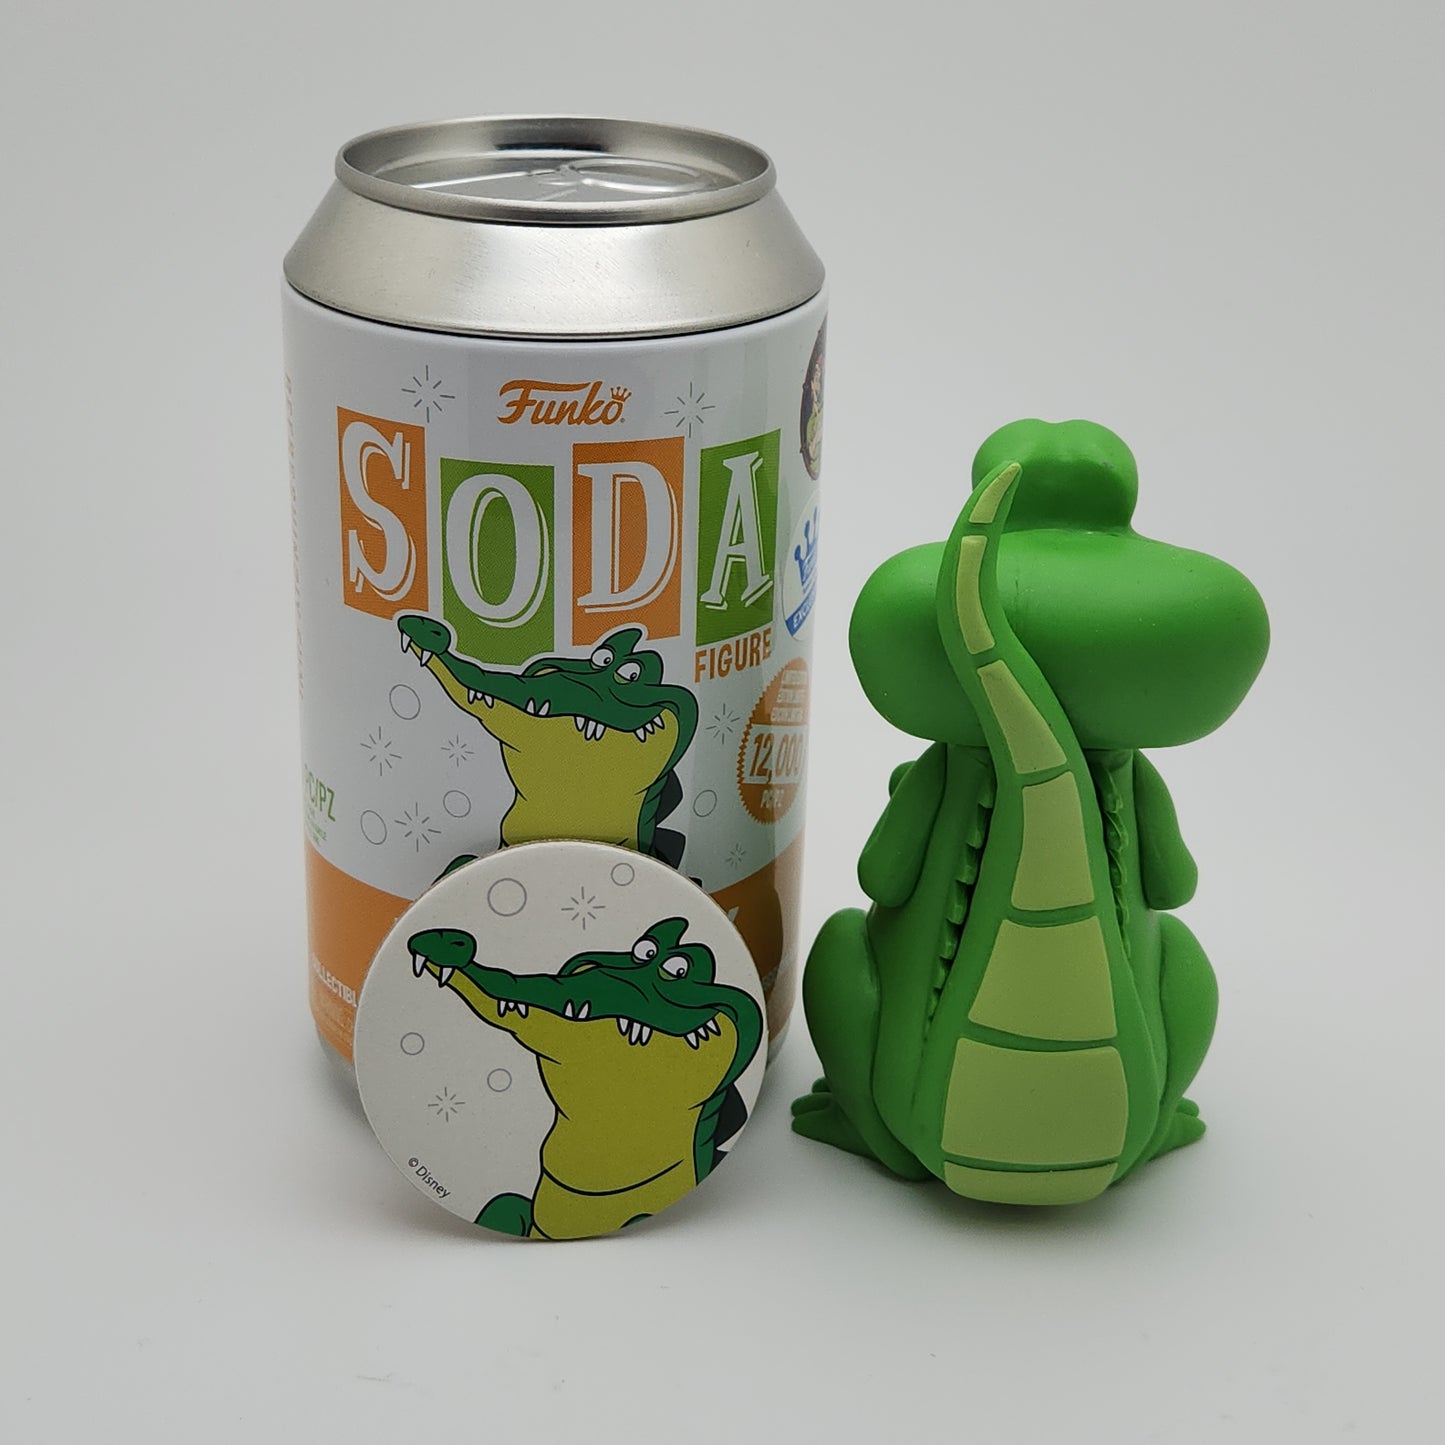 Funko Soda- Tick Tock (Disney)